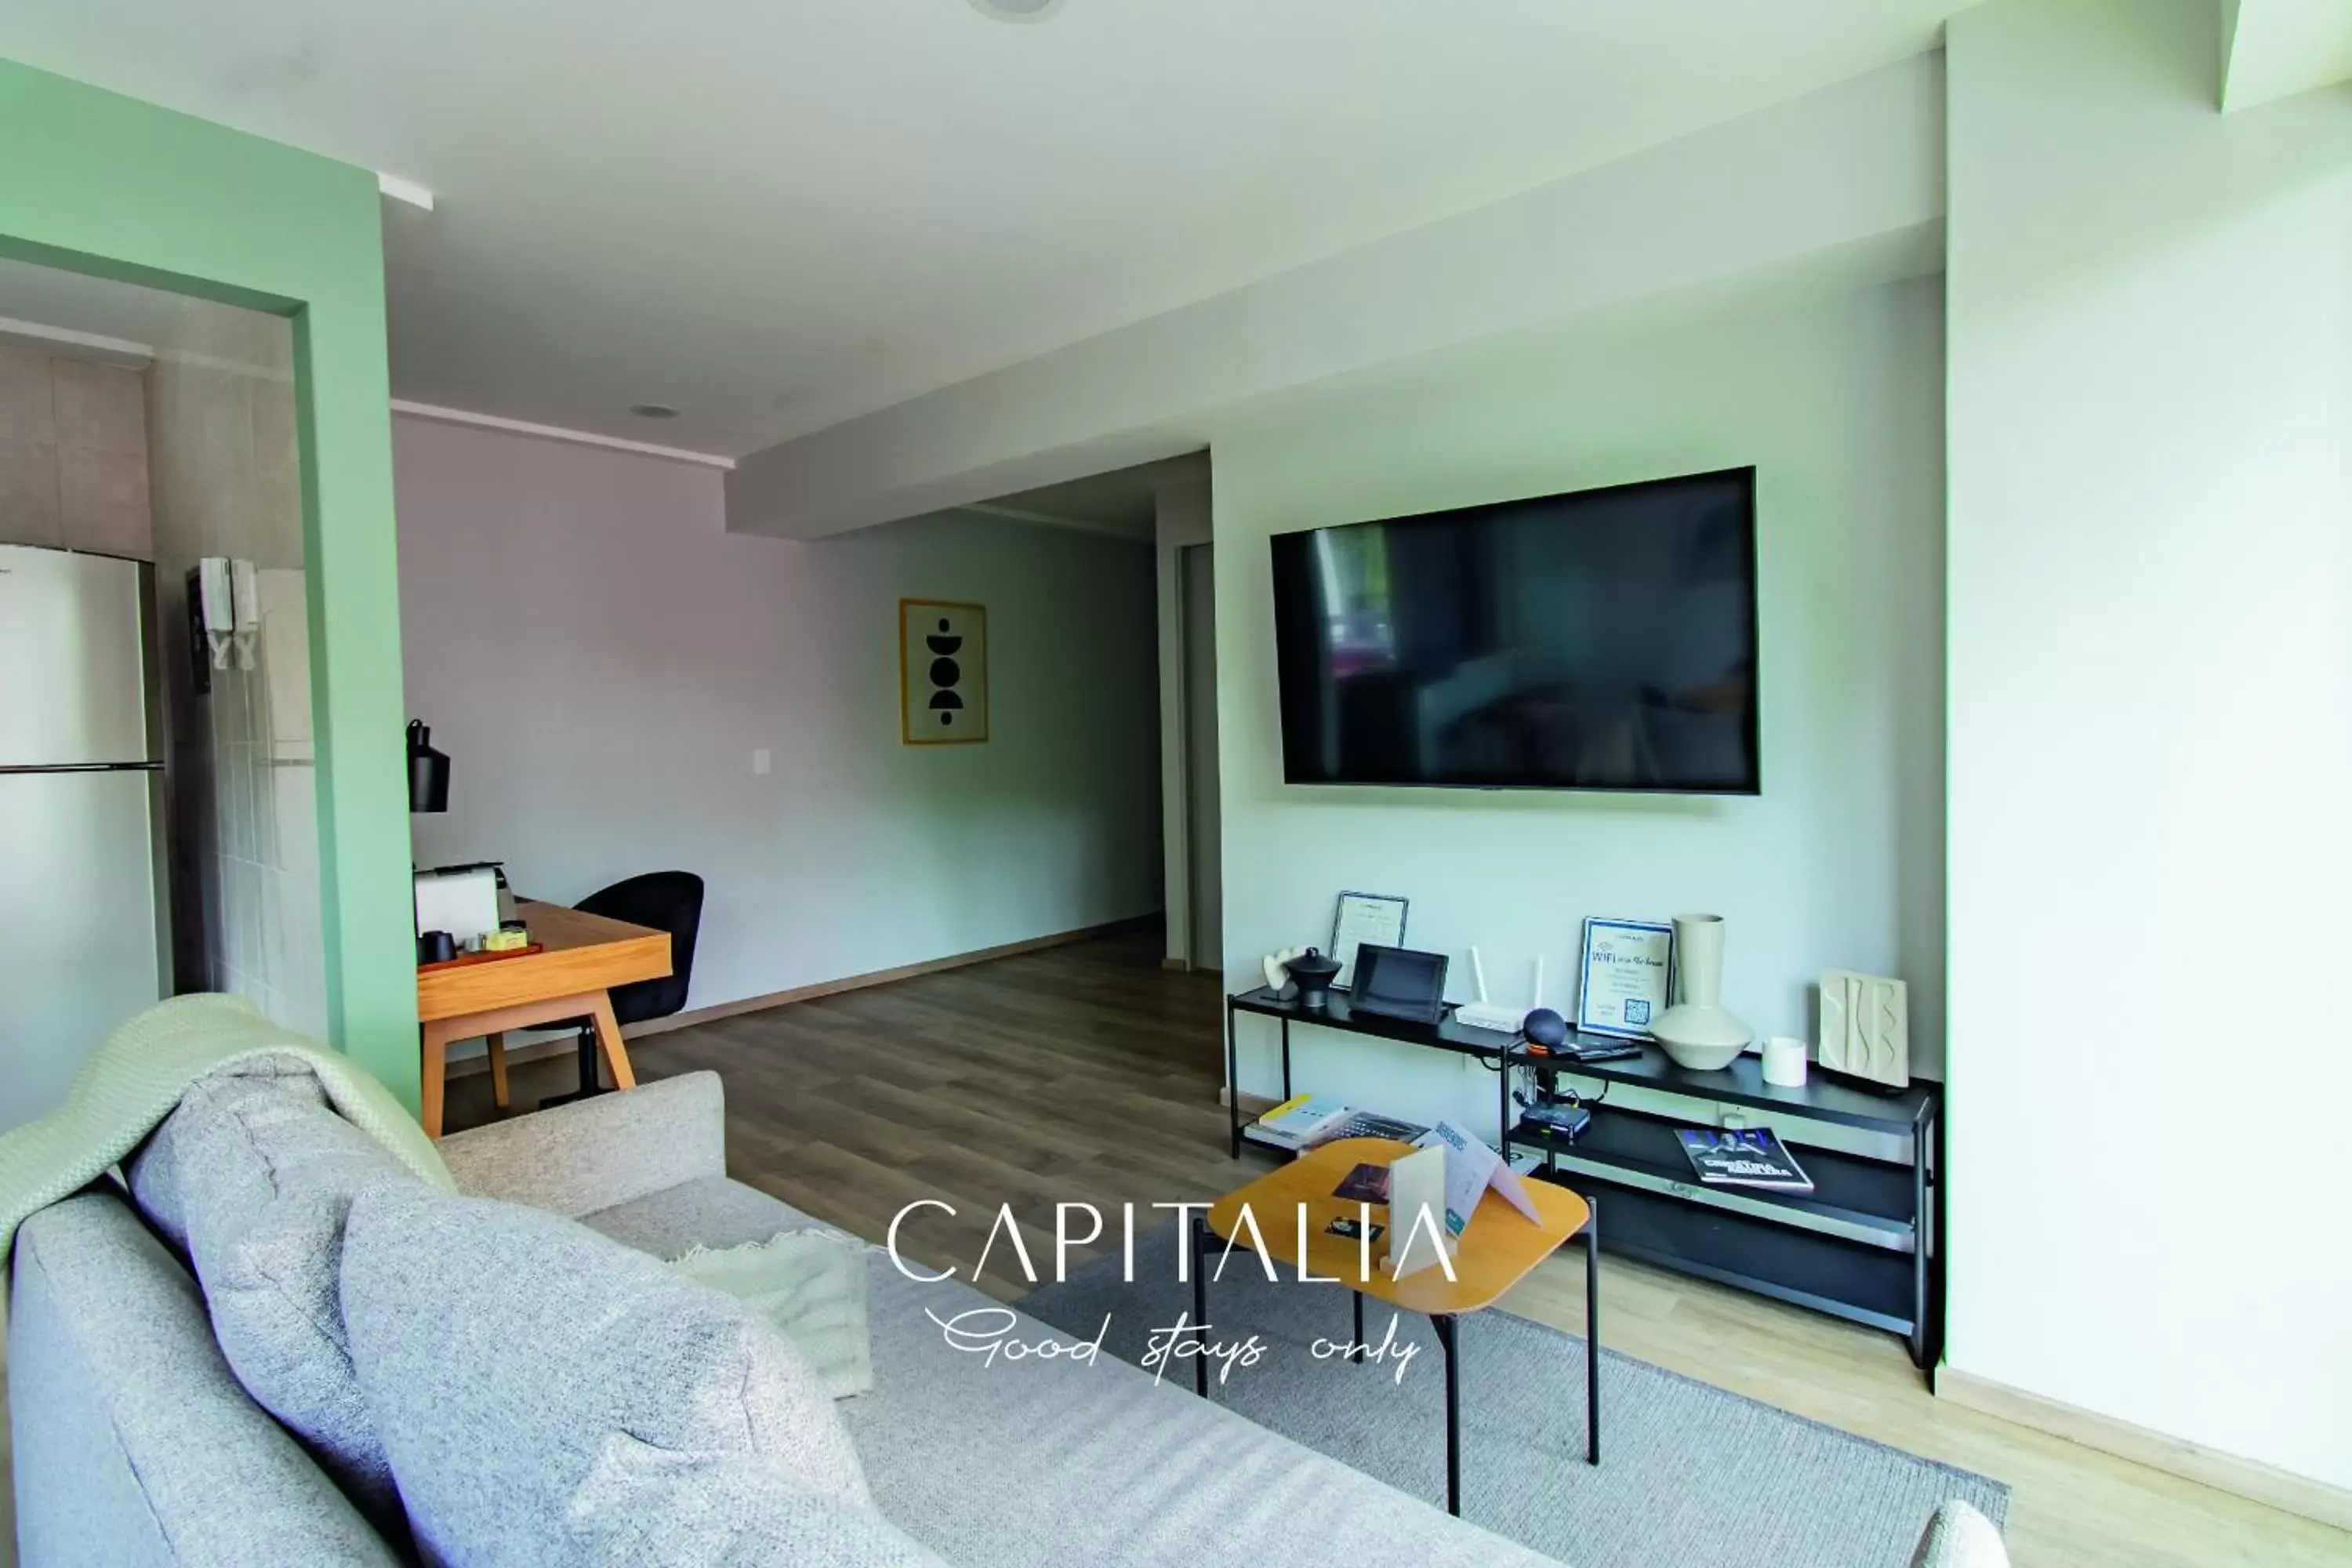 Deluxe Apartment in Capitalia - Apartments - Anzures